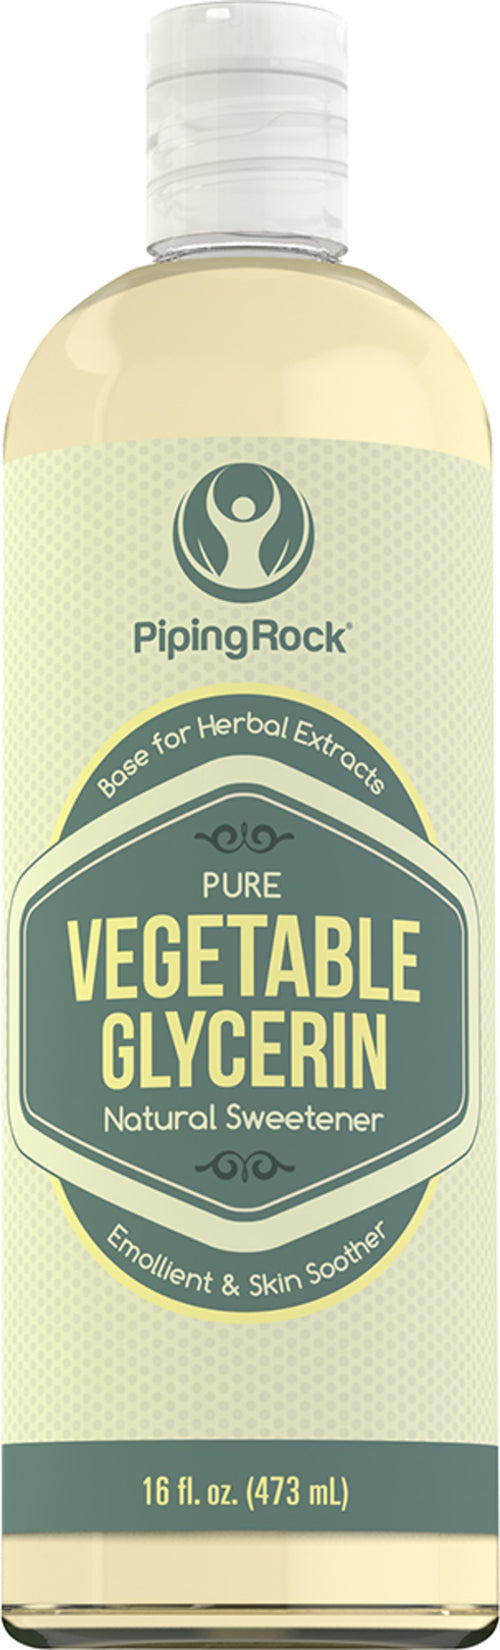 Vegetable Glycerin, 16 fl oz (473 mL) Bottle